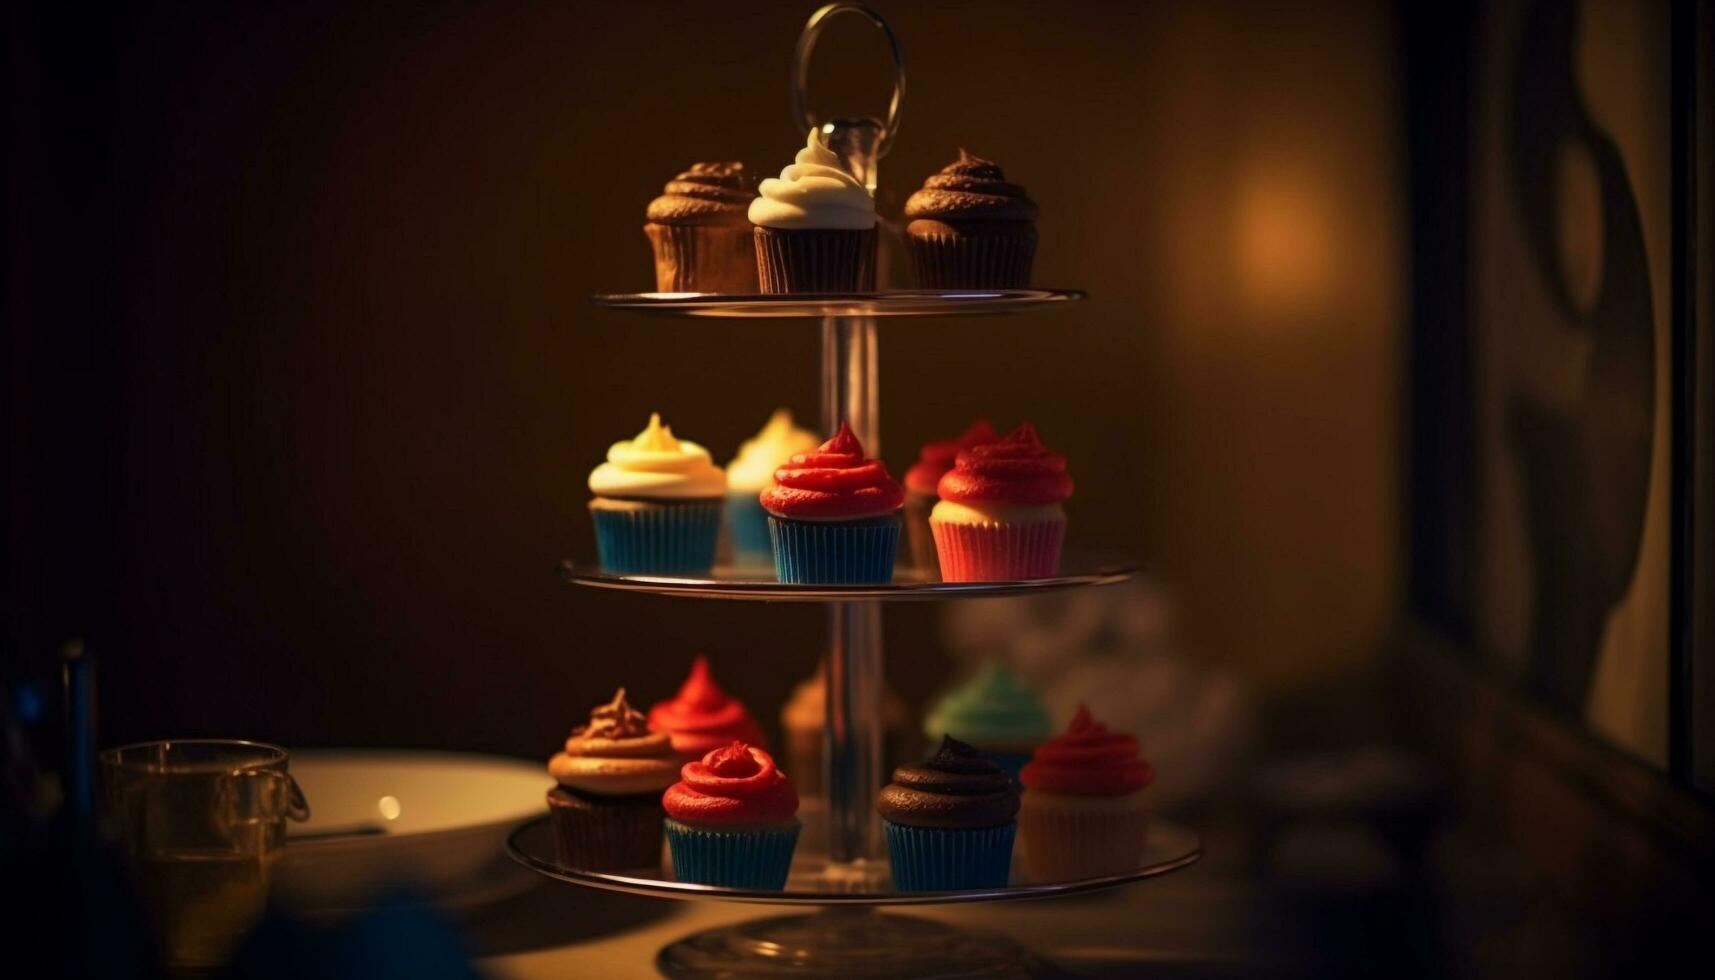 toegeeflijk cupcakes met fijnproever glazuur, chocola en aardbei decoratie gegenereerd door ai foto